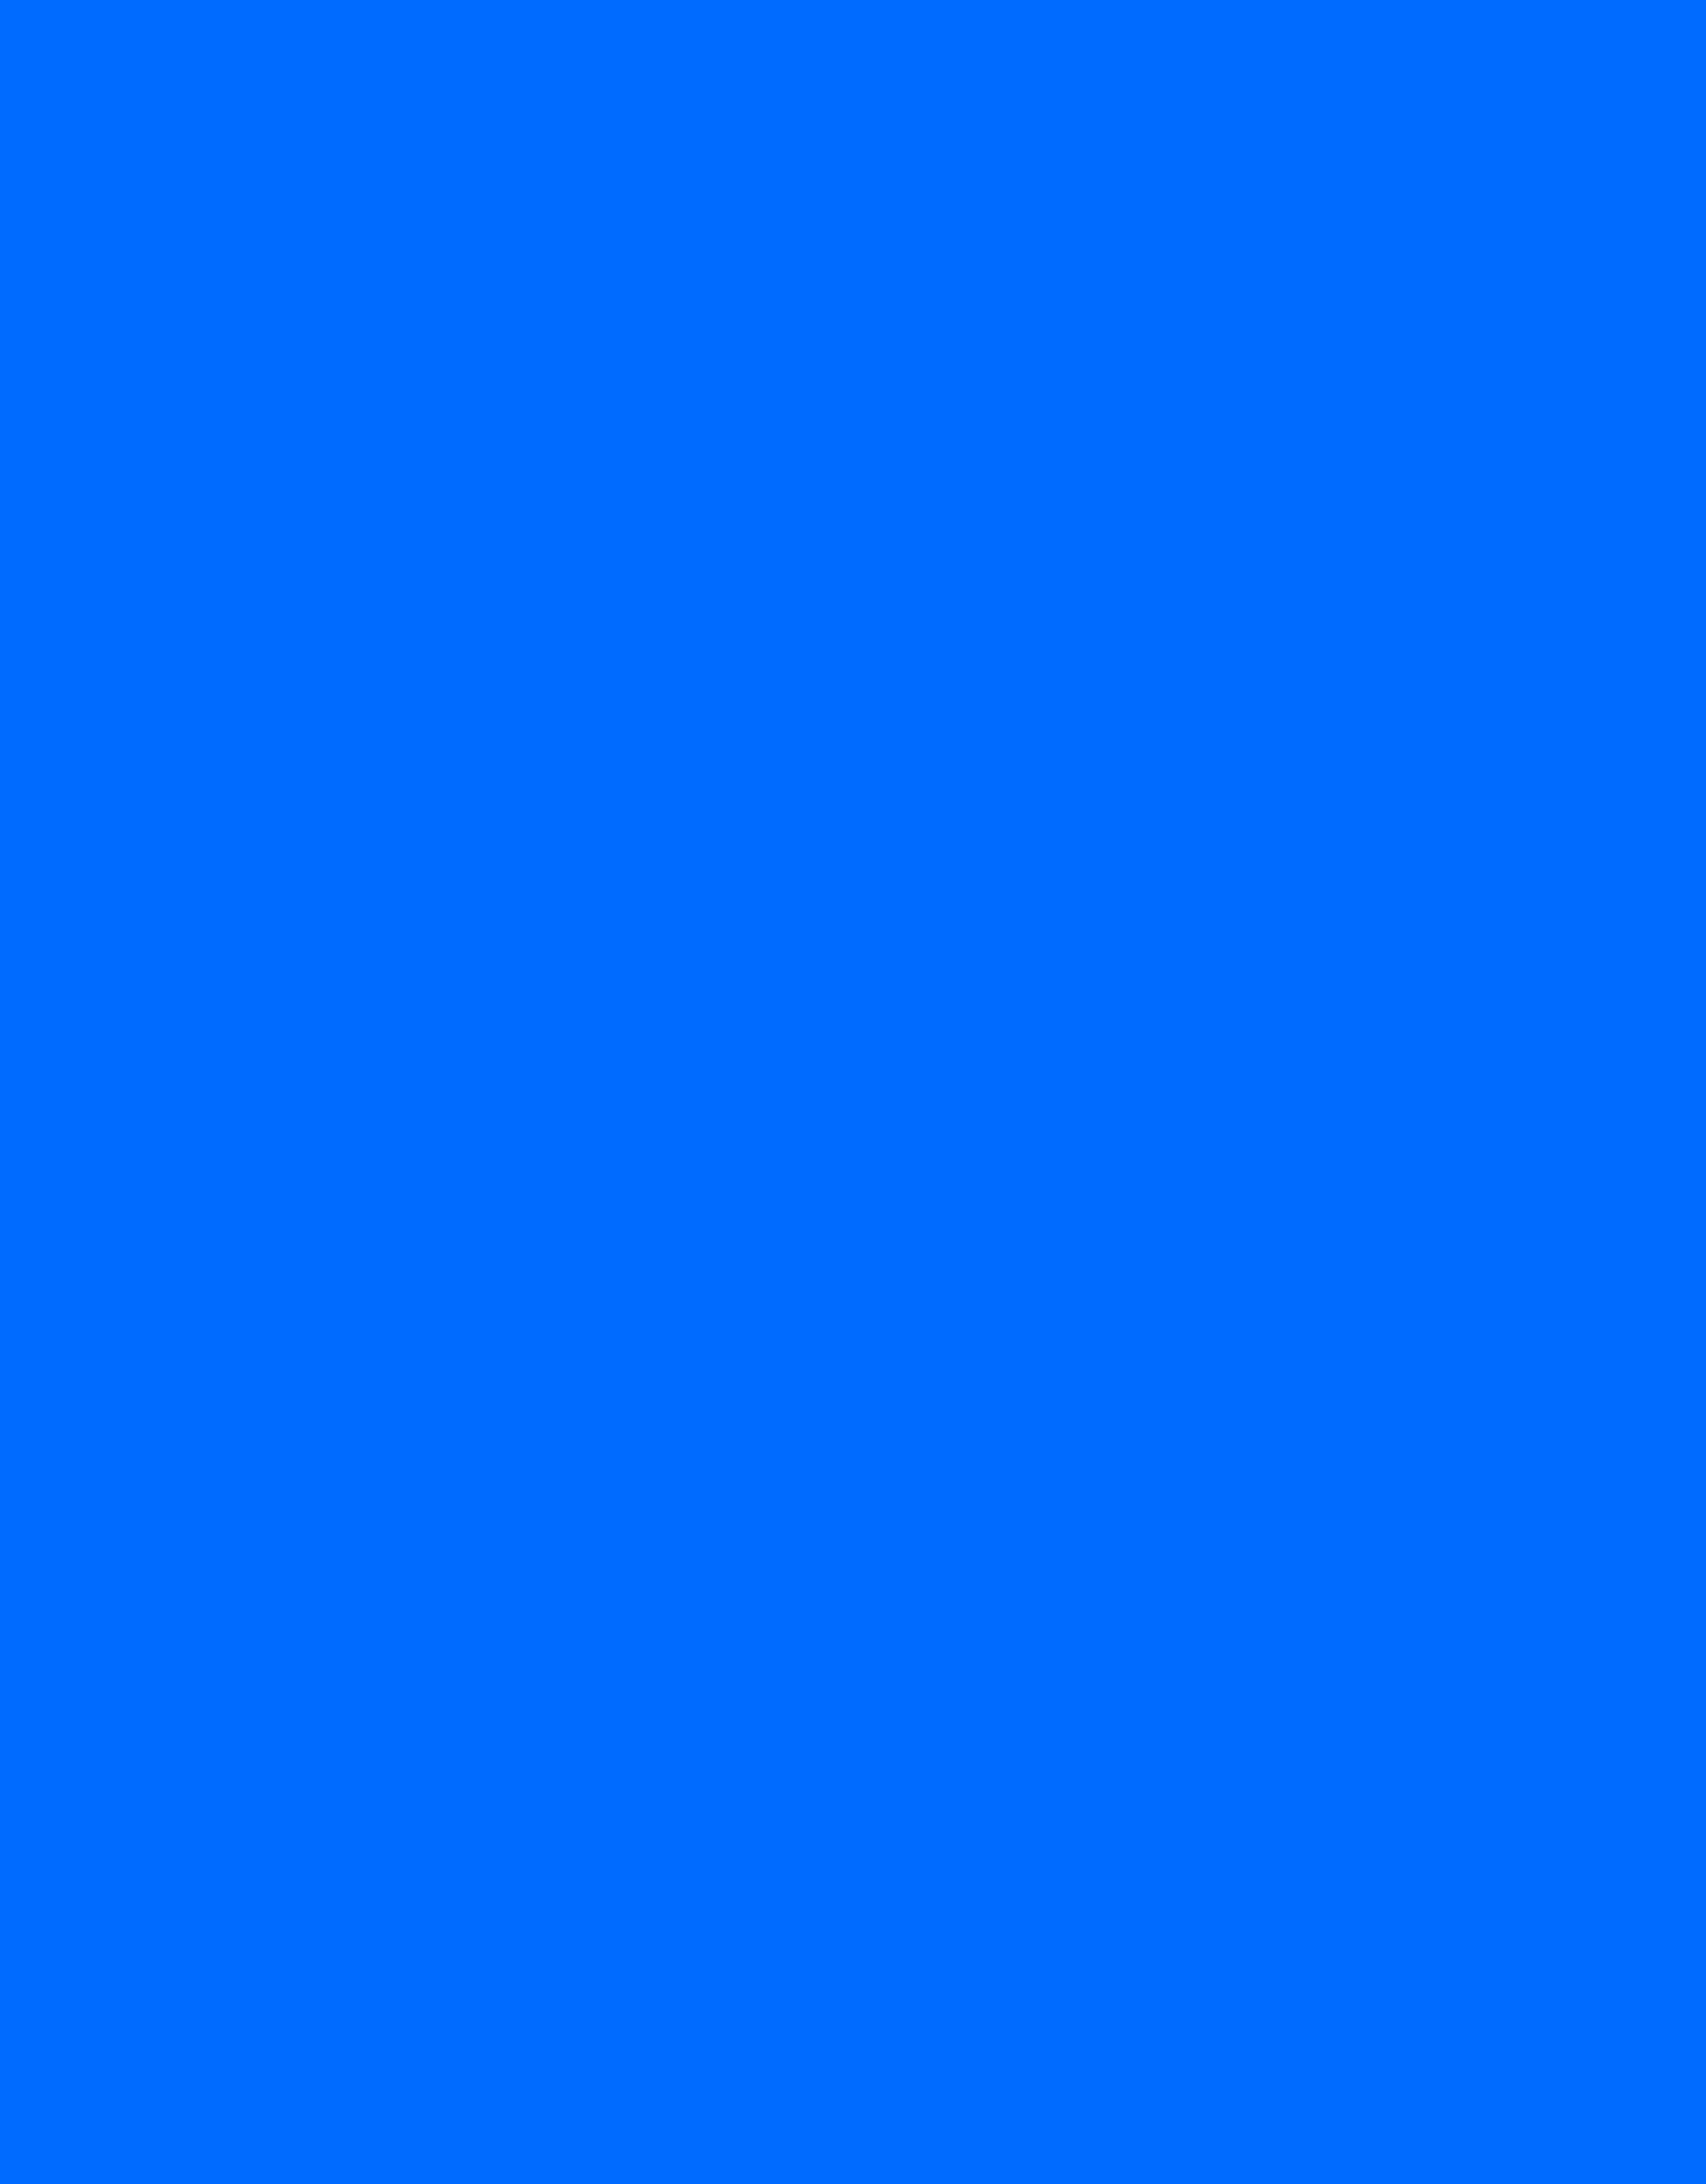 Background thẻ phông xanh dương mang đến sự tươi mát và sựu thanh thoát cho hình ảnh của bạn. Với màu xanh dương đậm nét, thẻ phông này sẽ giúp bức ảnh của bạn trông hoàn hảo và dễ chịu hơn. Phù hợp cho việc chụp hình ngoài trời, thẻ phông xanh dương là một lựa chọn tuyệt vời cho những ai yêu thích sự năng động và tươi mới.